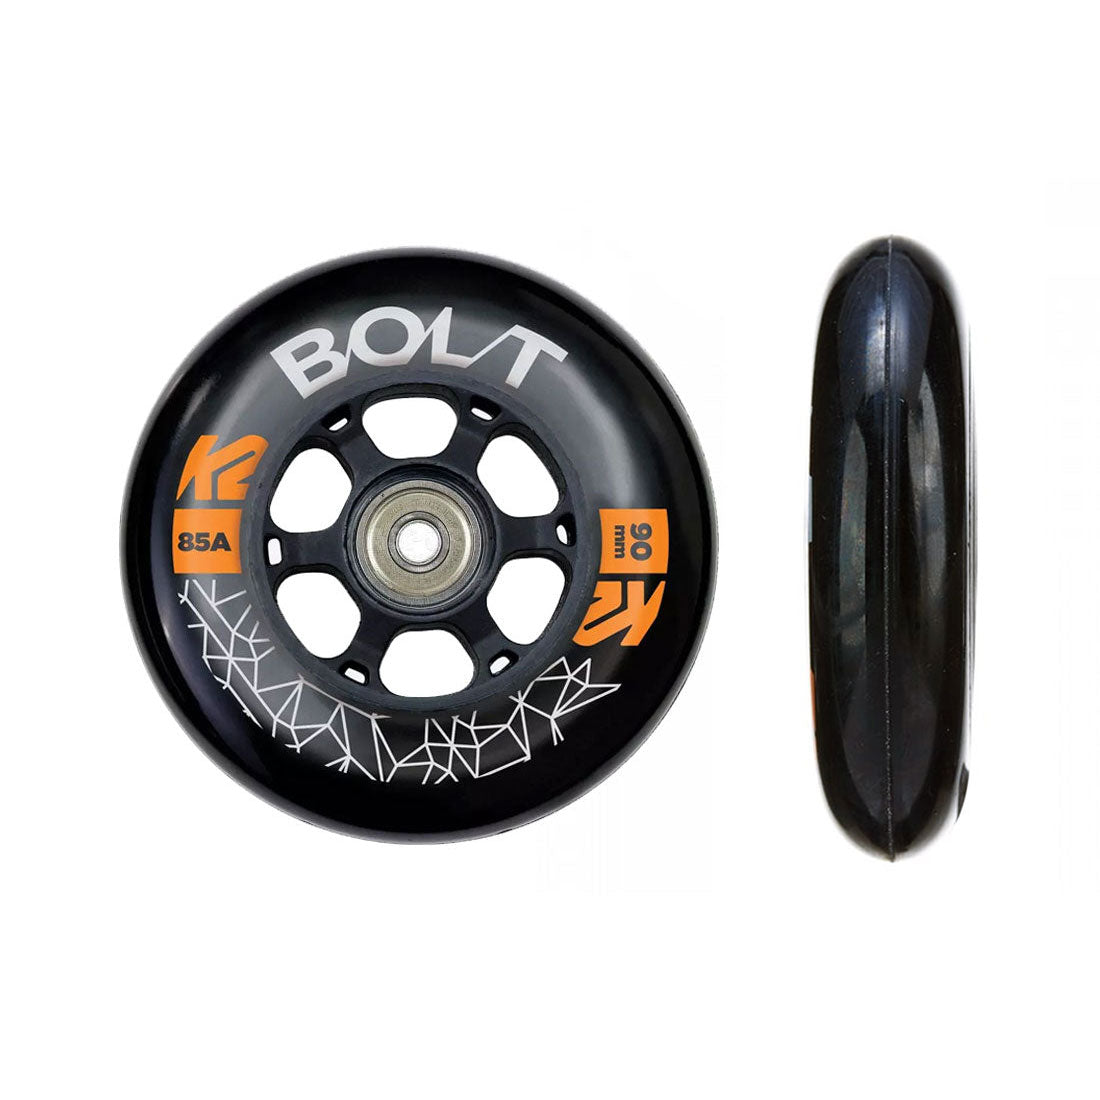 K2 Bolt Speed 90mm 85a 8pk w/ ILQ9 Bearings Inline Rec Wheels